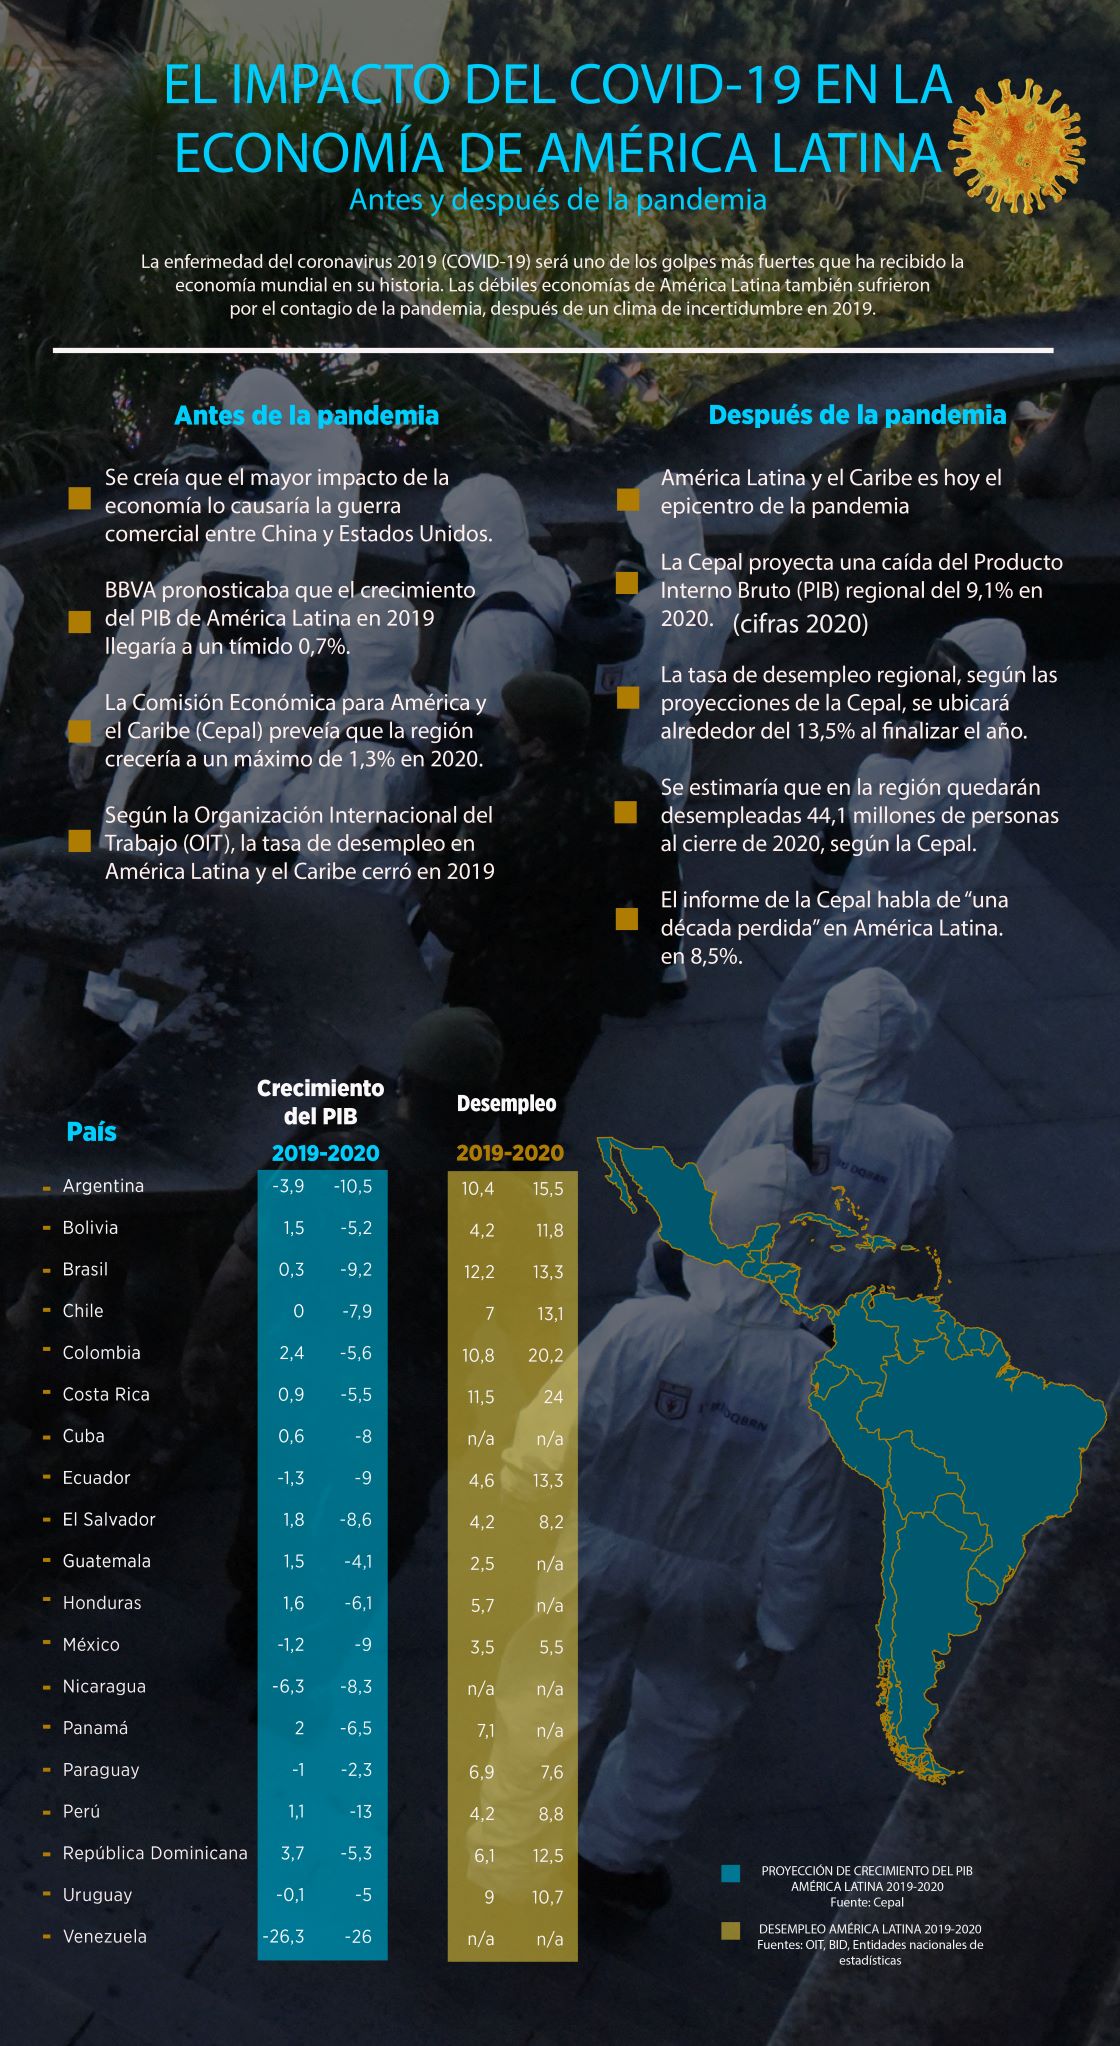 El impacto del COVID-19 en la economía de América Latina, antes y después de la pandemia